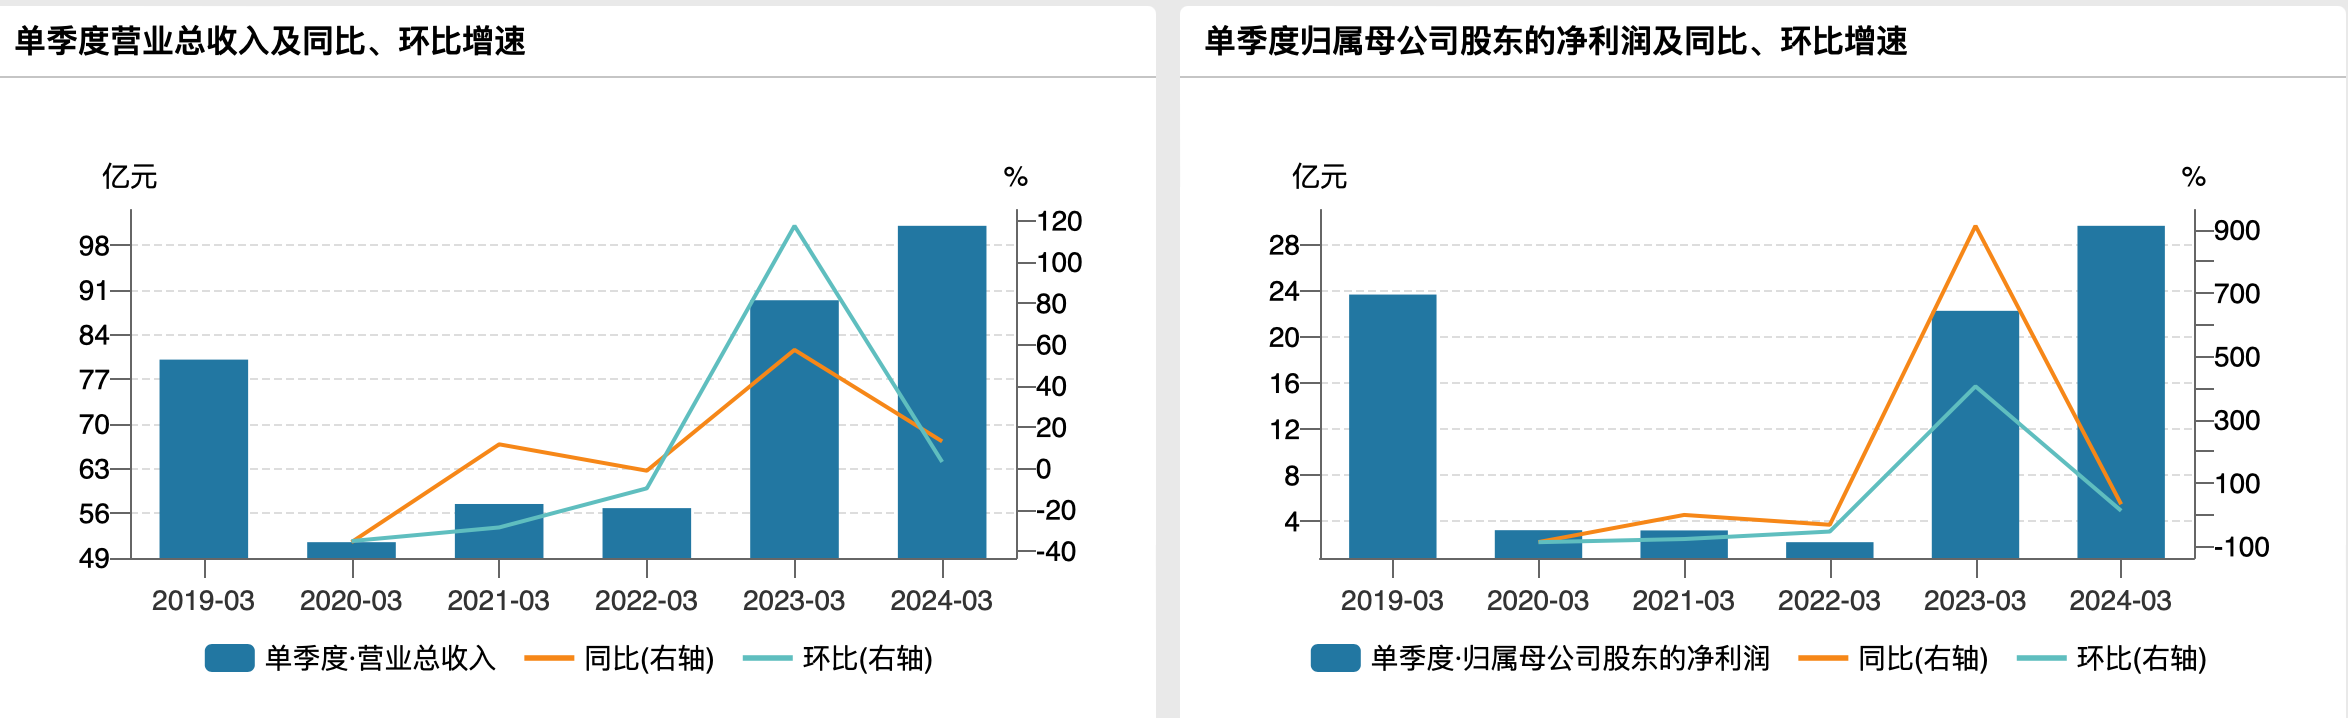 京沪高铁过往一季度业绩，来源于wind